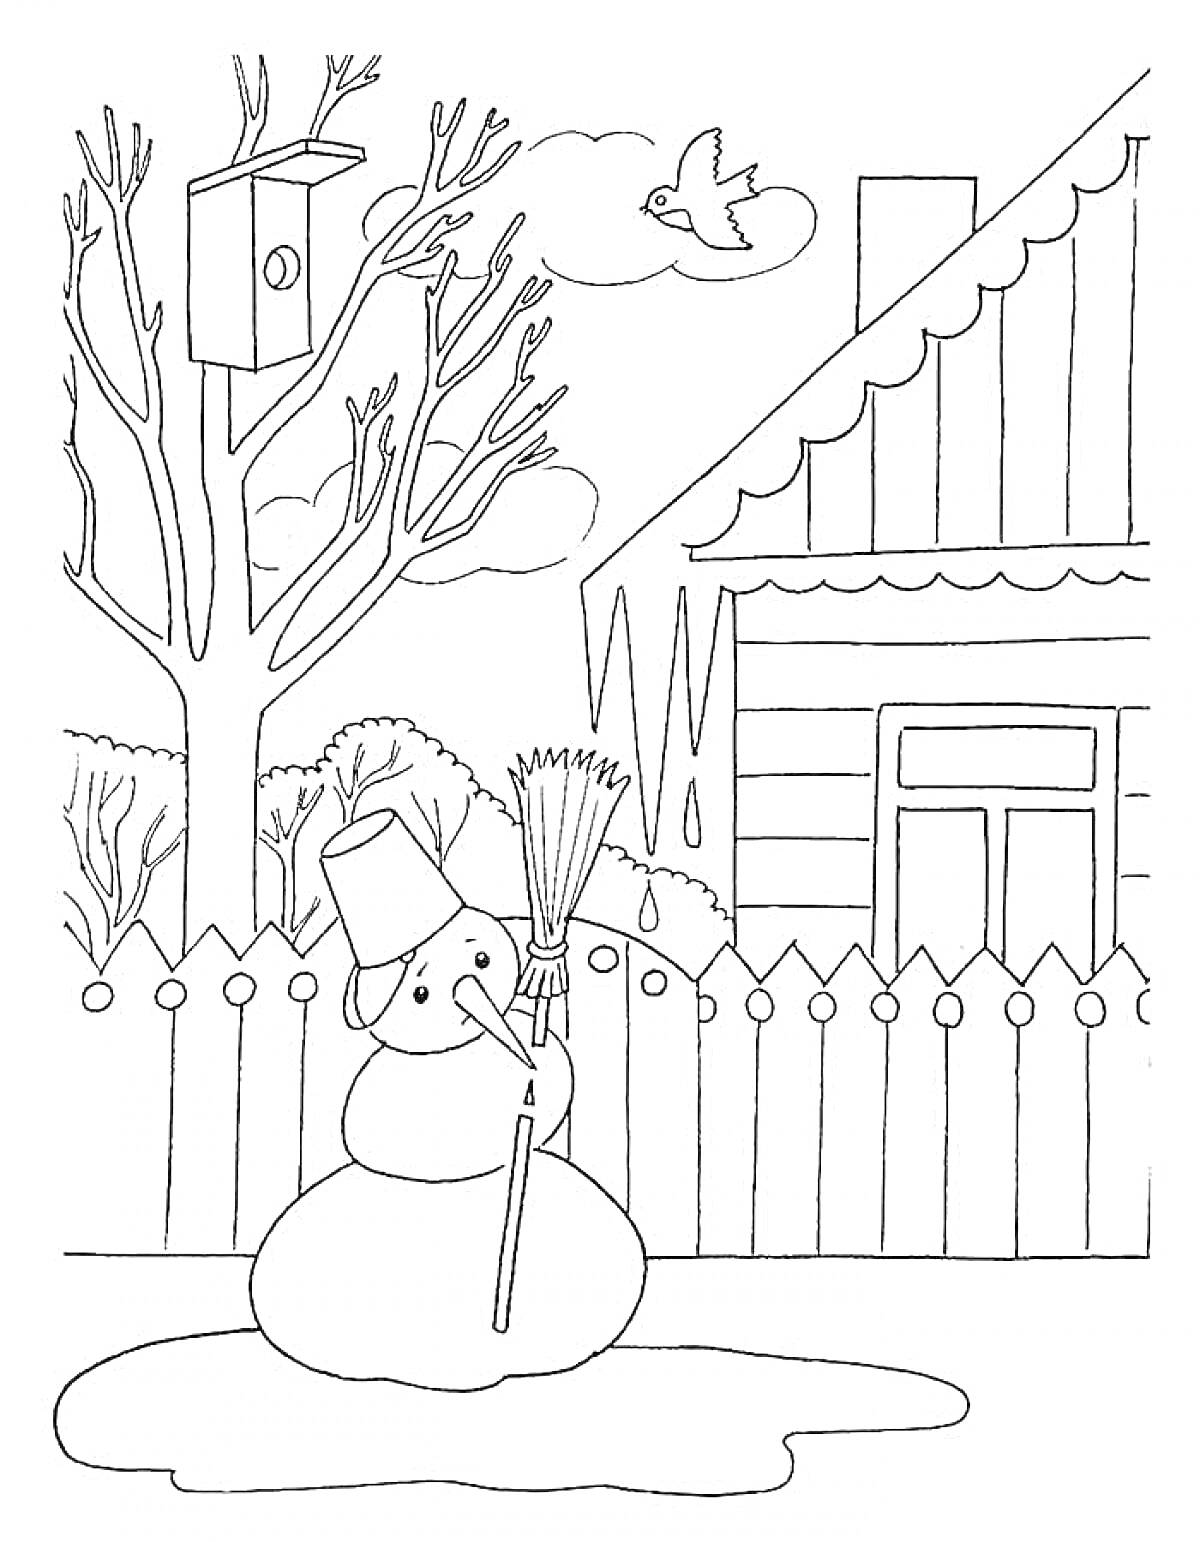 Снеговик во дворе у дома с кормушкой для птиц на дереве